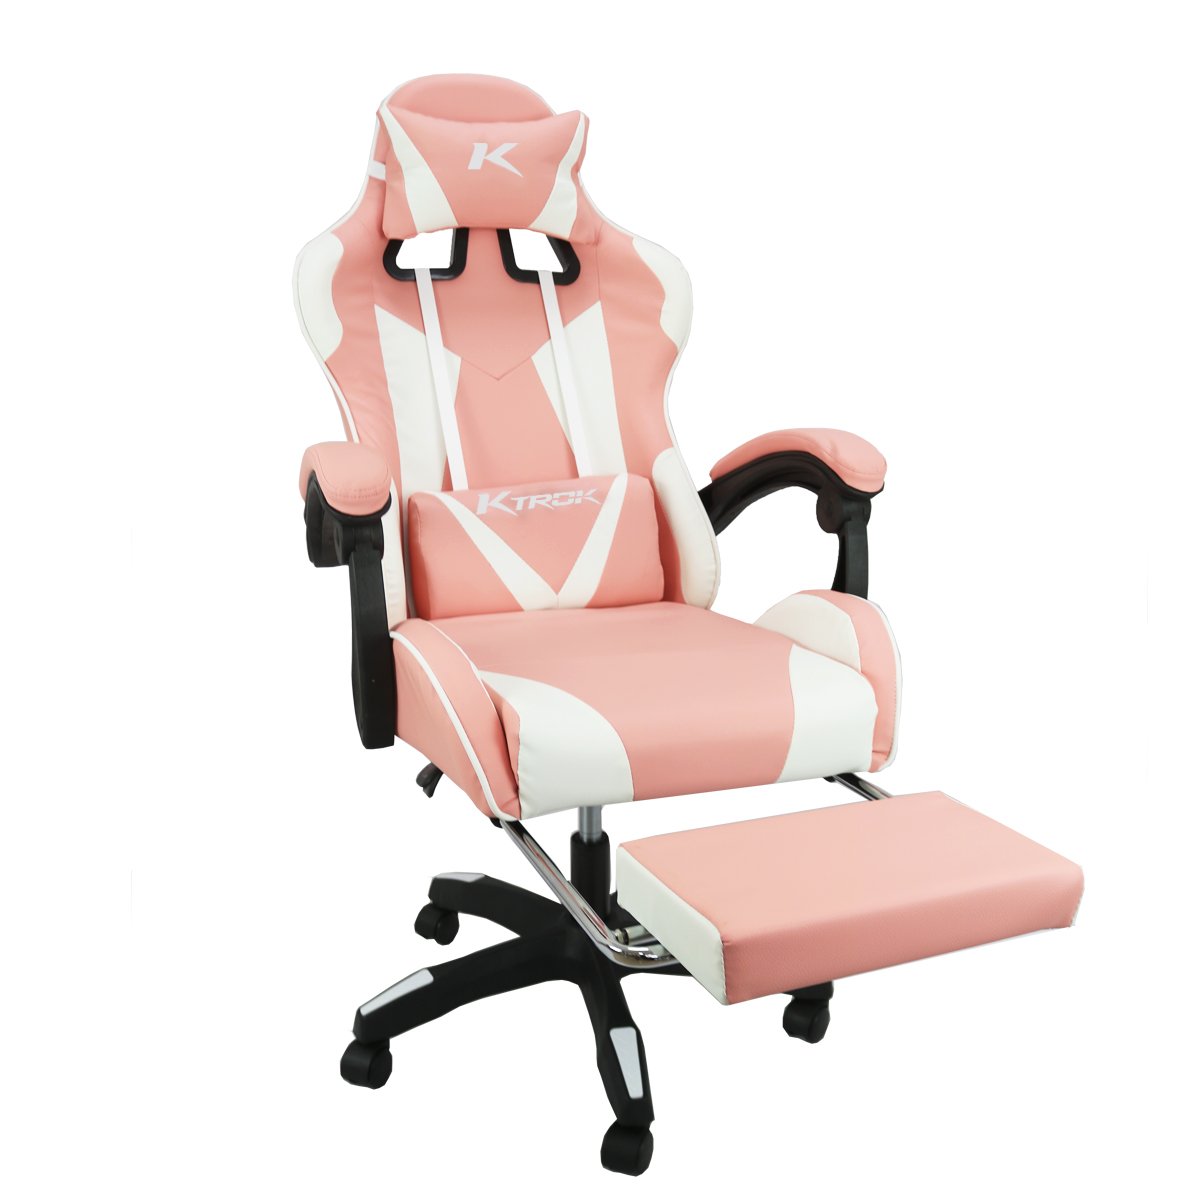 Cadeira Gamer Ktrok ProSeat Giratória Retrátil - Rosa